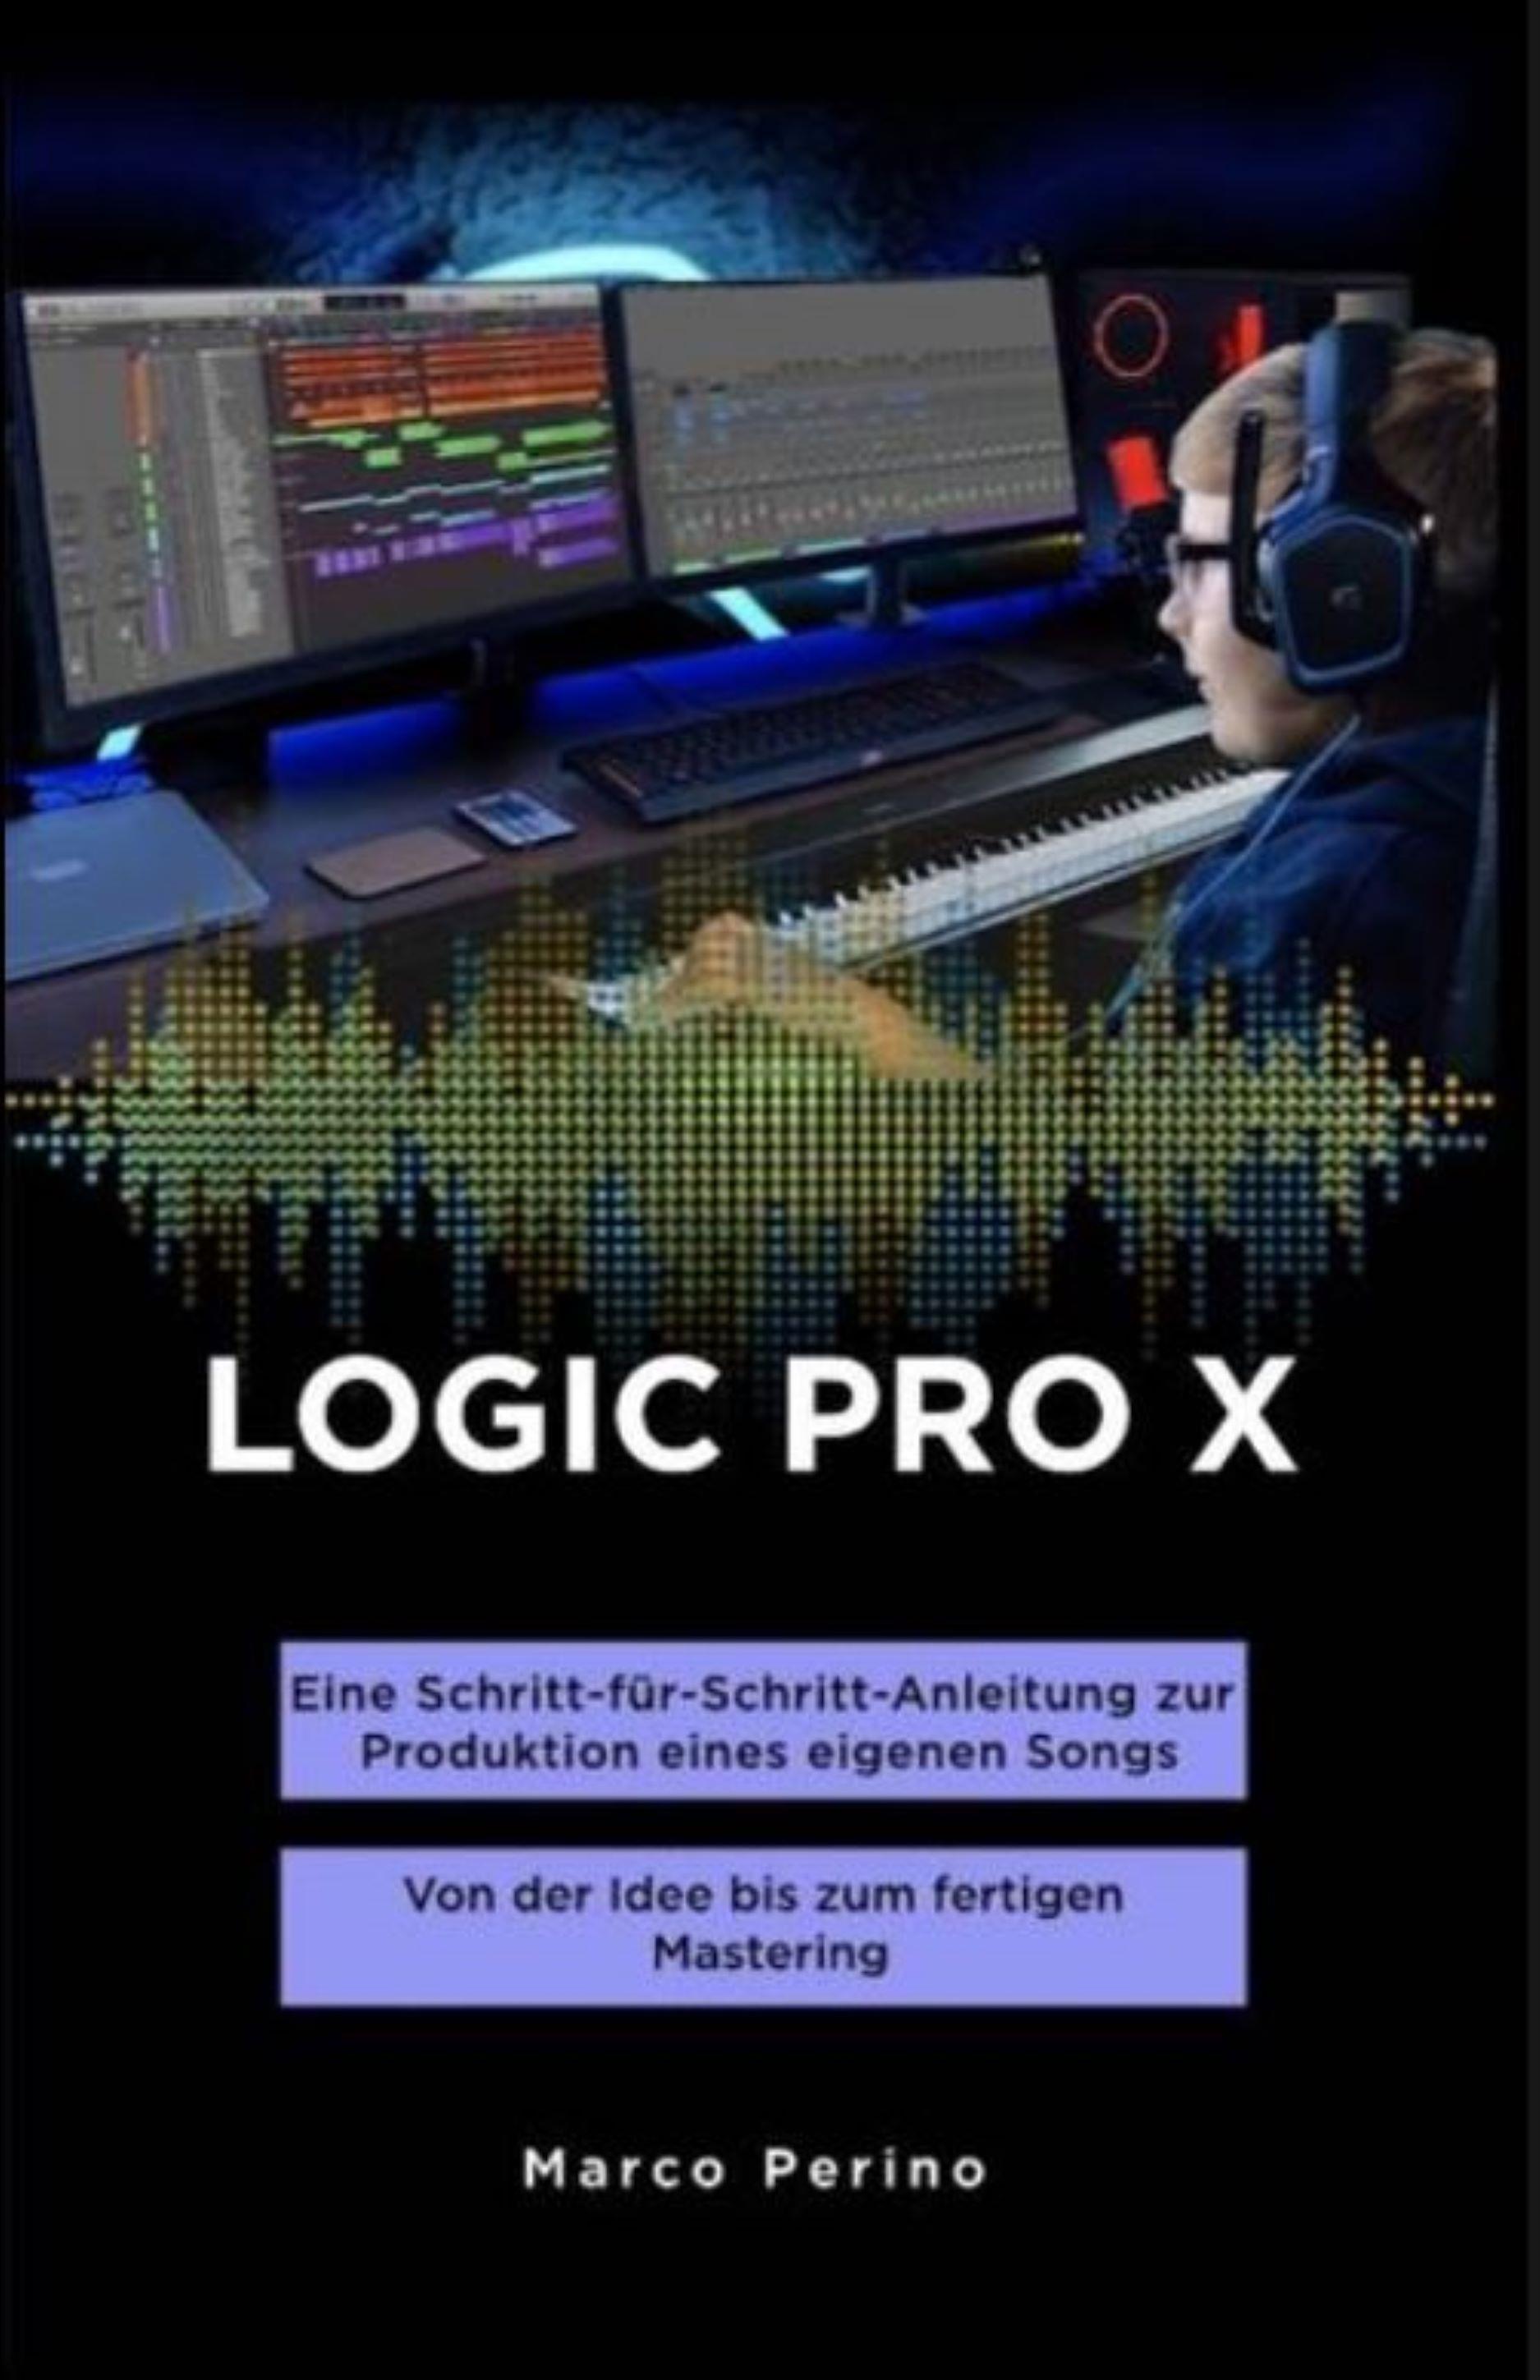 LOGIC PRO X - Eine Schritt-für-Schritt-Anleitung zur Produktion eines eigenen Songs